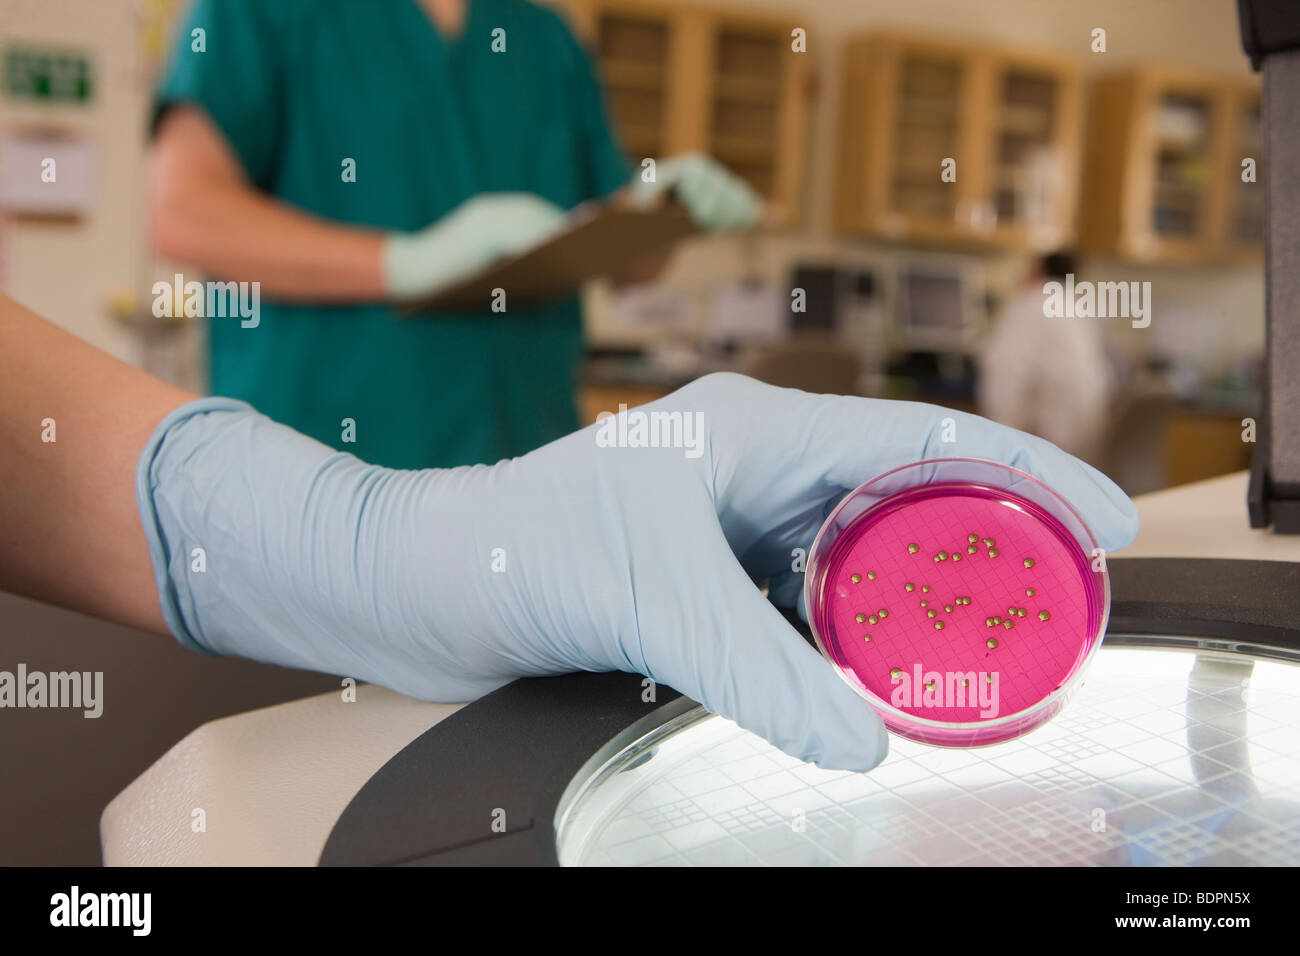 L'analyse scientifique de la croissance de bactéries dans un échantillon Banque D'Images